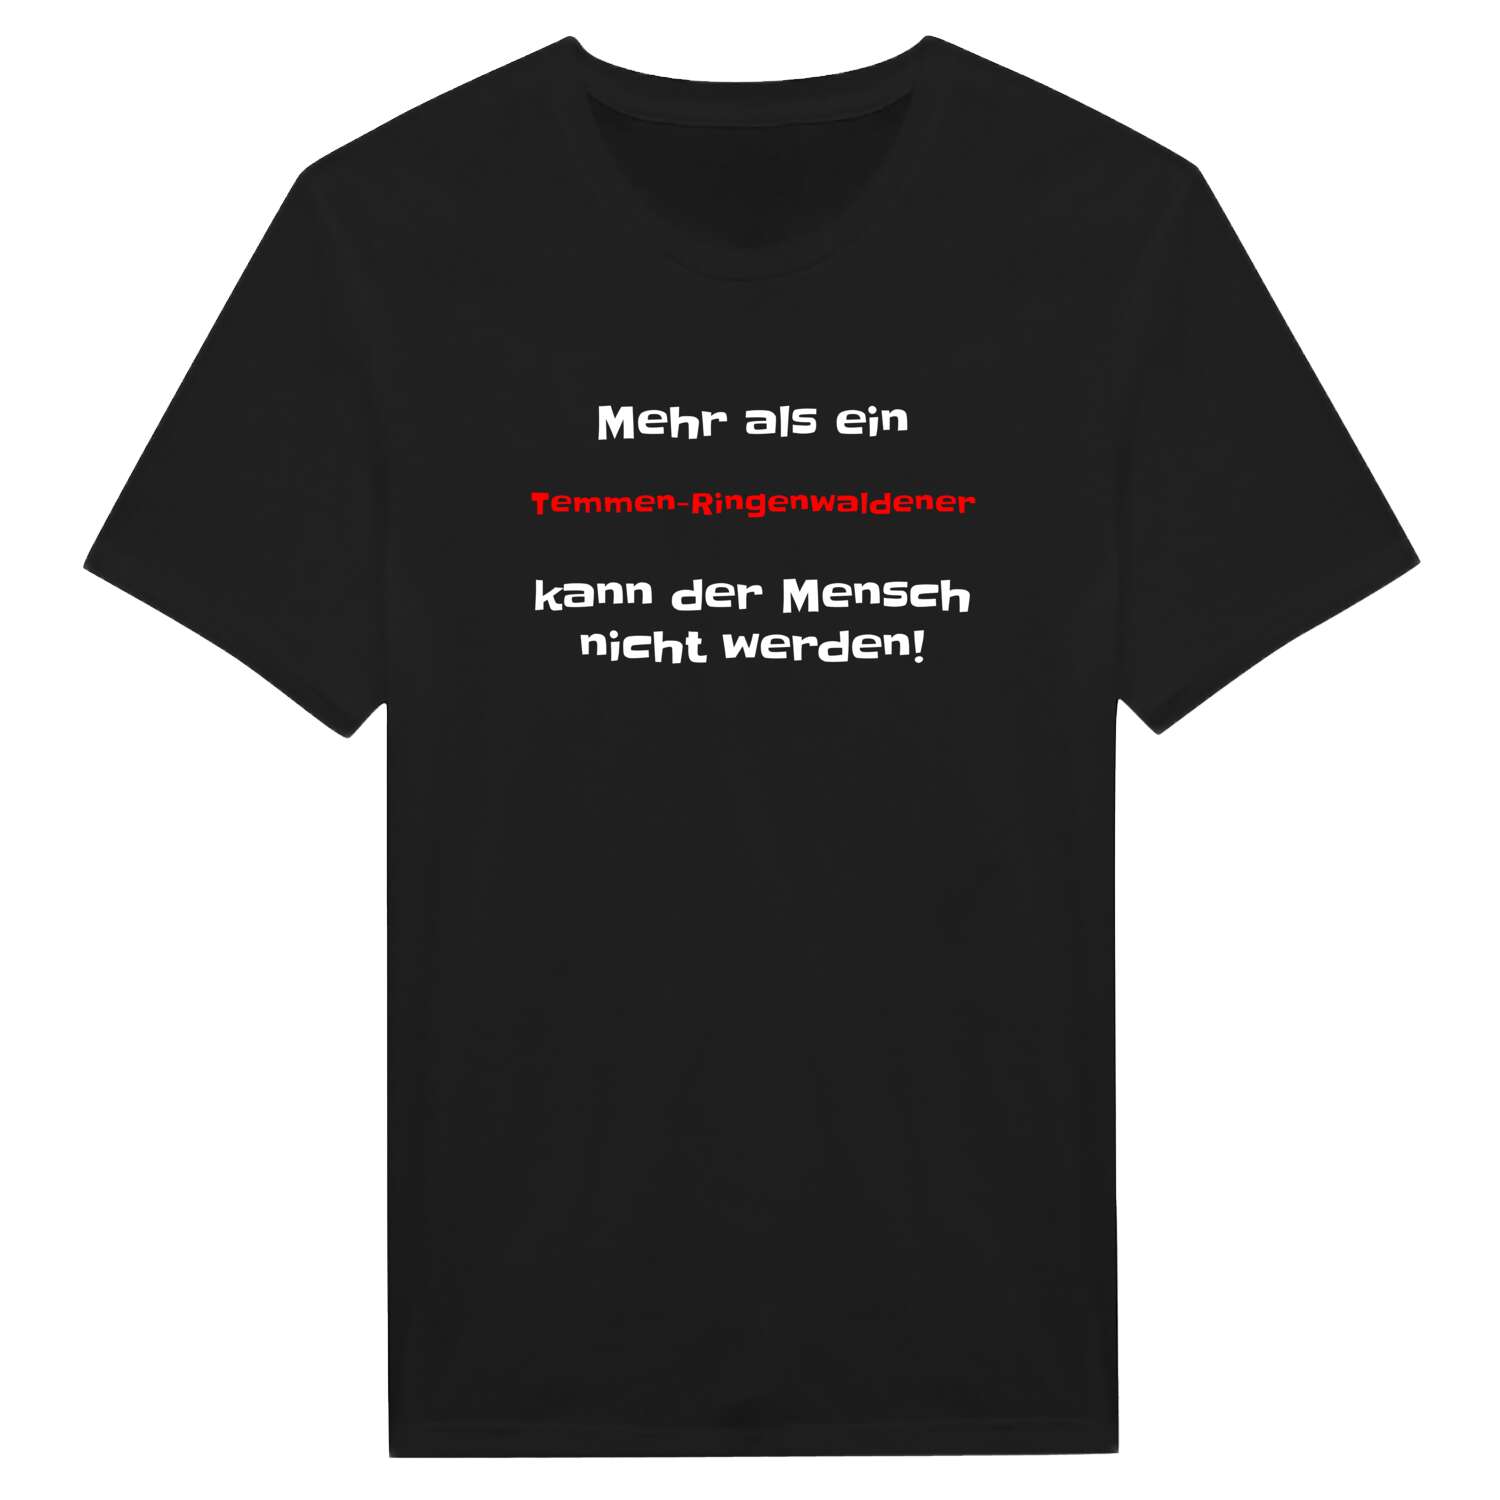 Temmen-Ringenwalde T-Shirt »Mehr als ein«